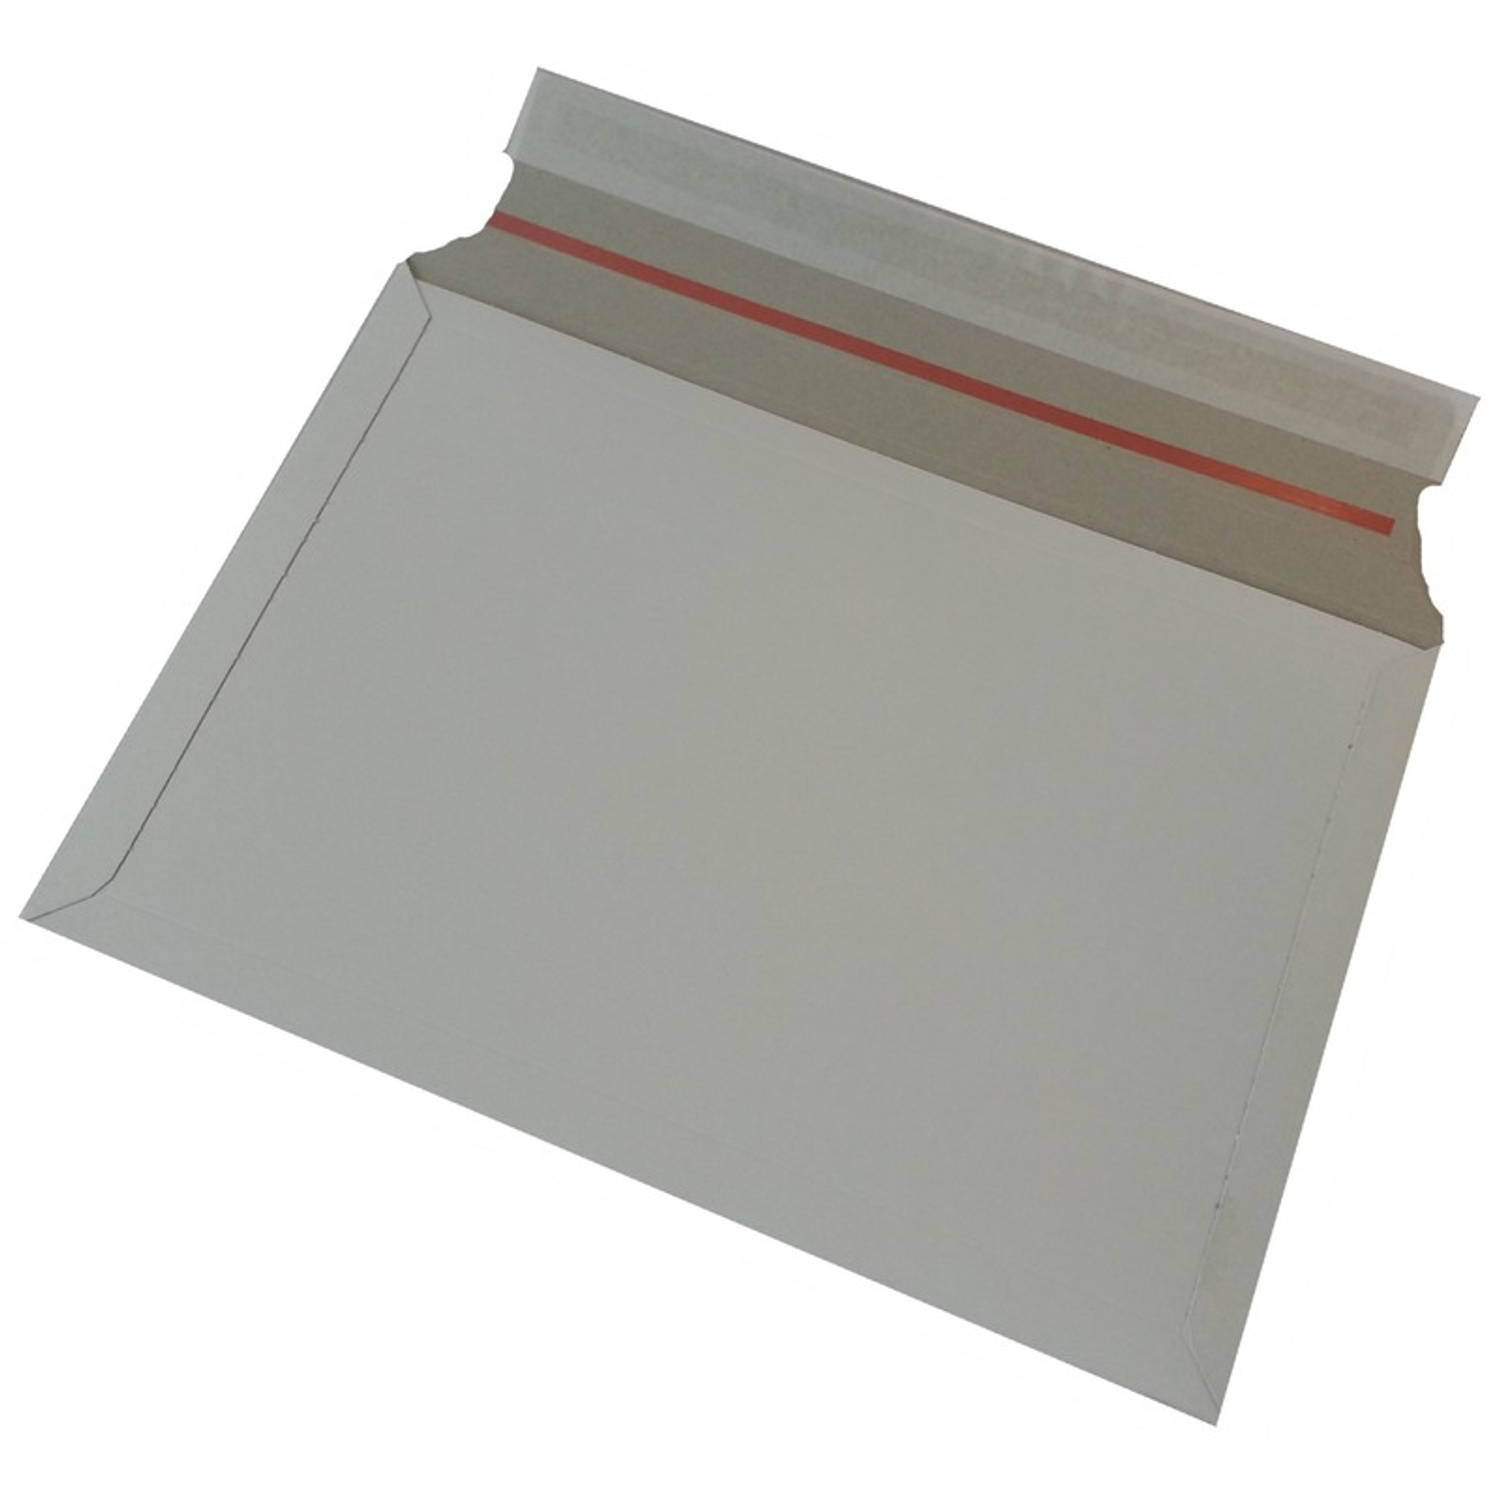 20x Witte kartonnen verzendenveloppen 38 x 26 cm Enveloppen verzendmateriaal-verpakkingen